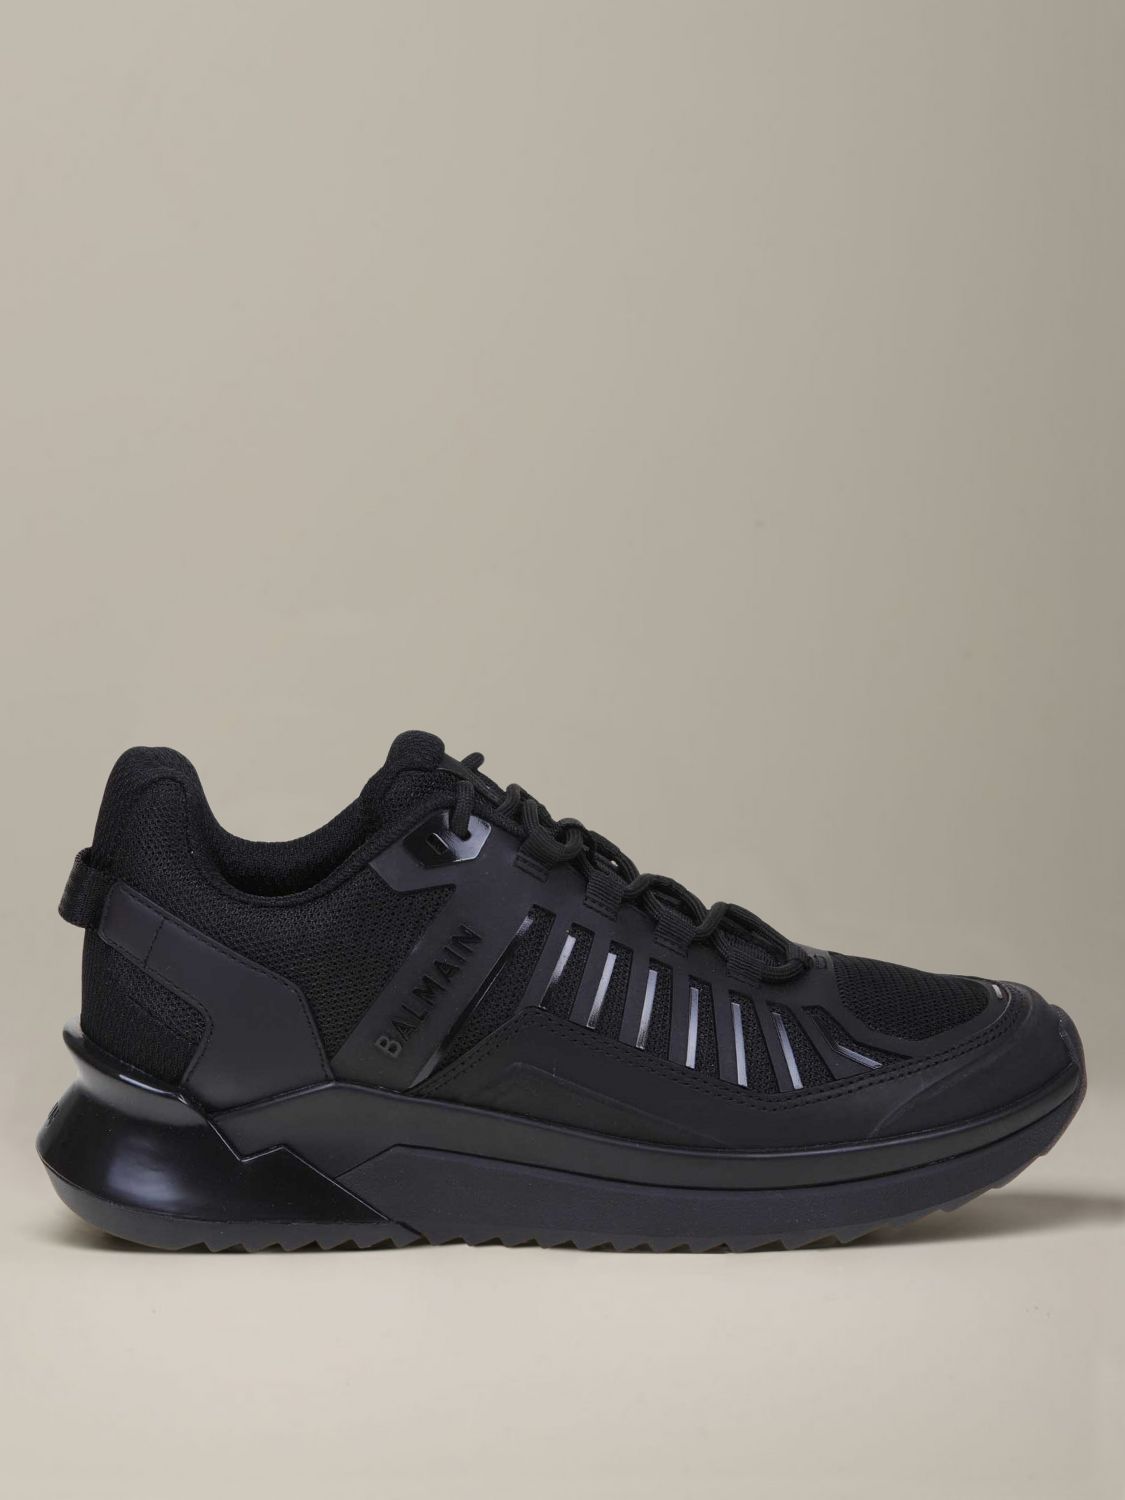 balmain black sneakers